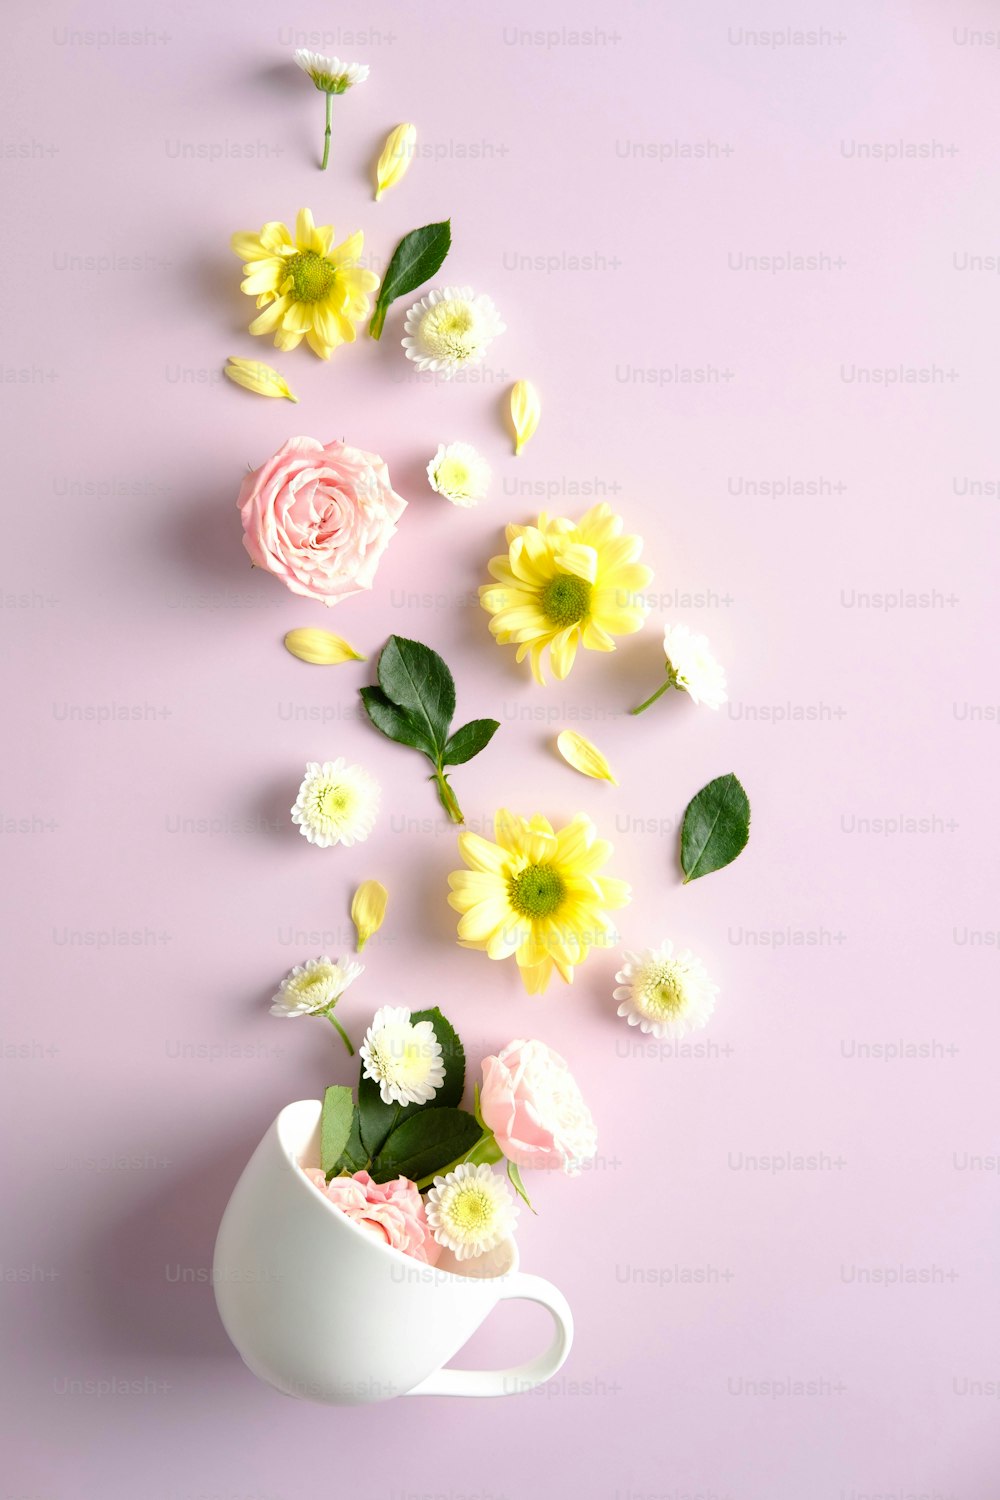 Kreative Komposition mit Tasse und Blumen auf rosa Hintergrund. Kräutertee-Konzept.